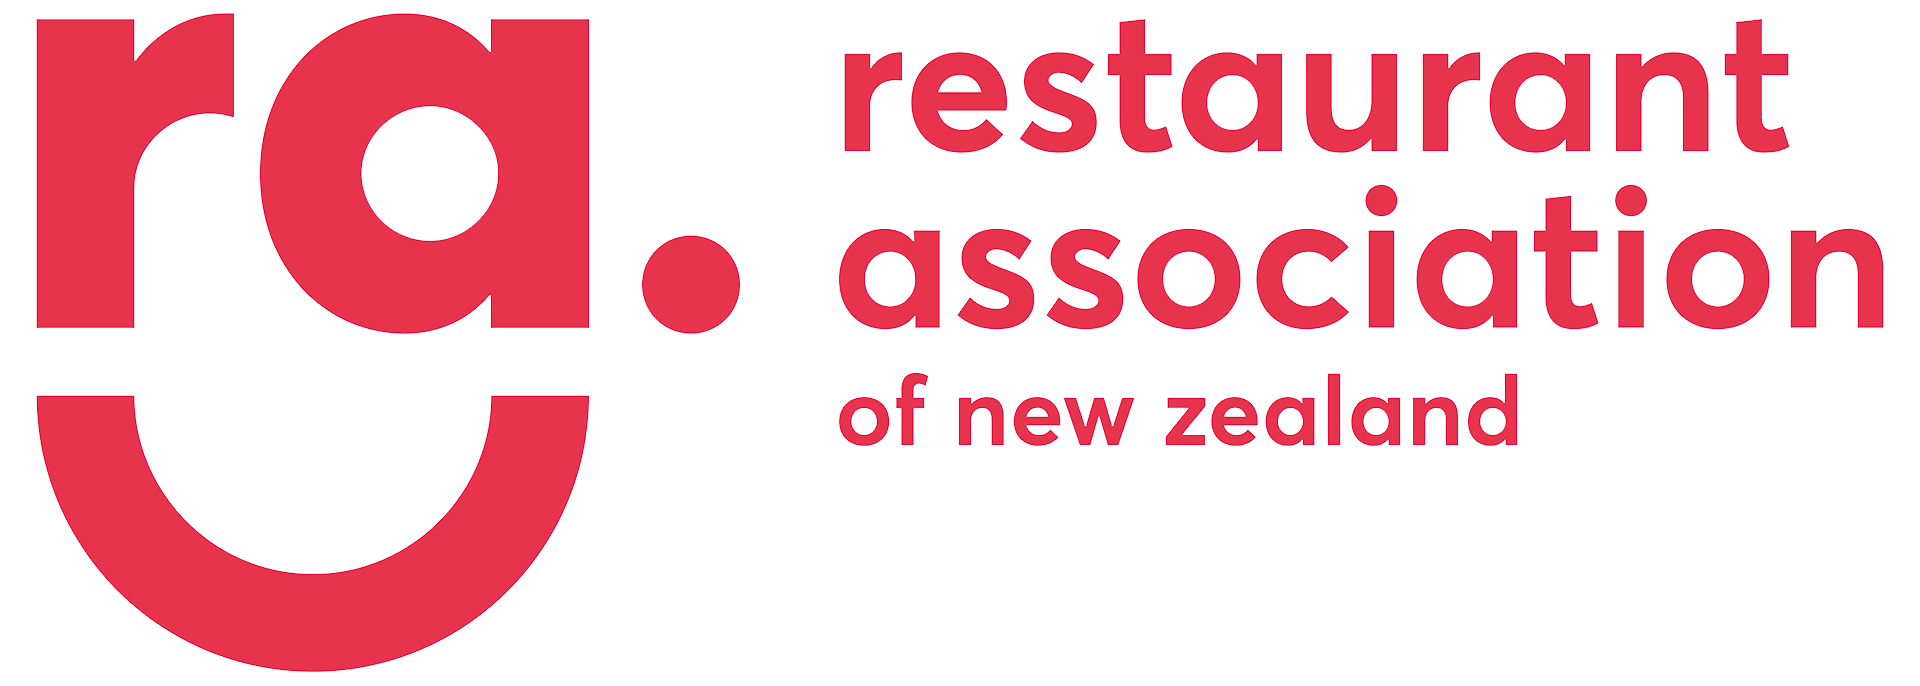 restaurant association of new zealand